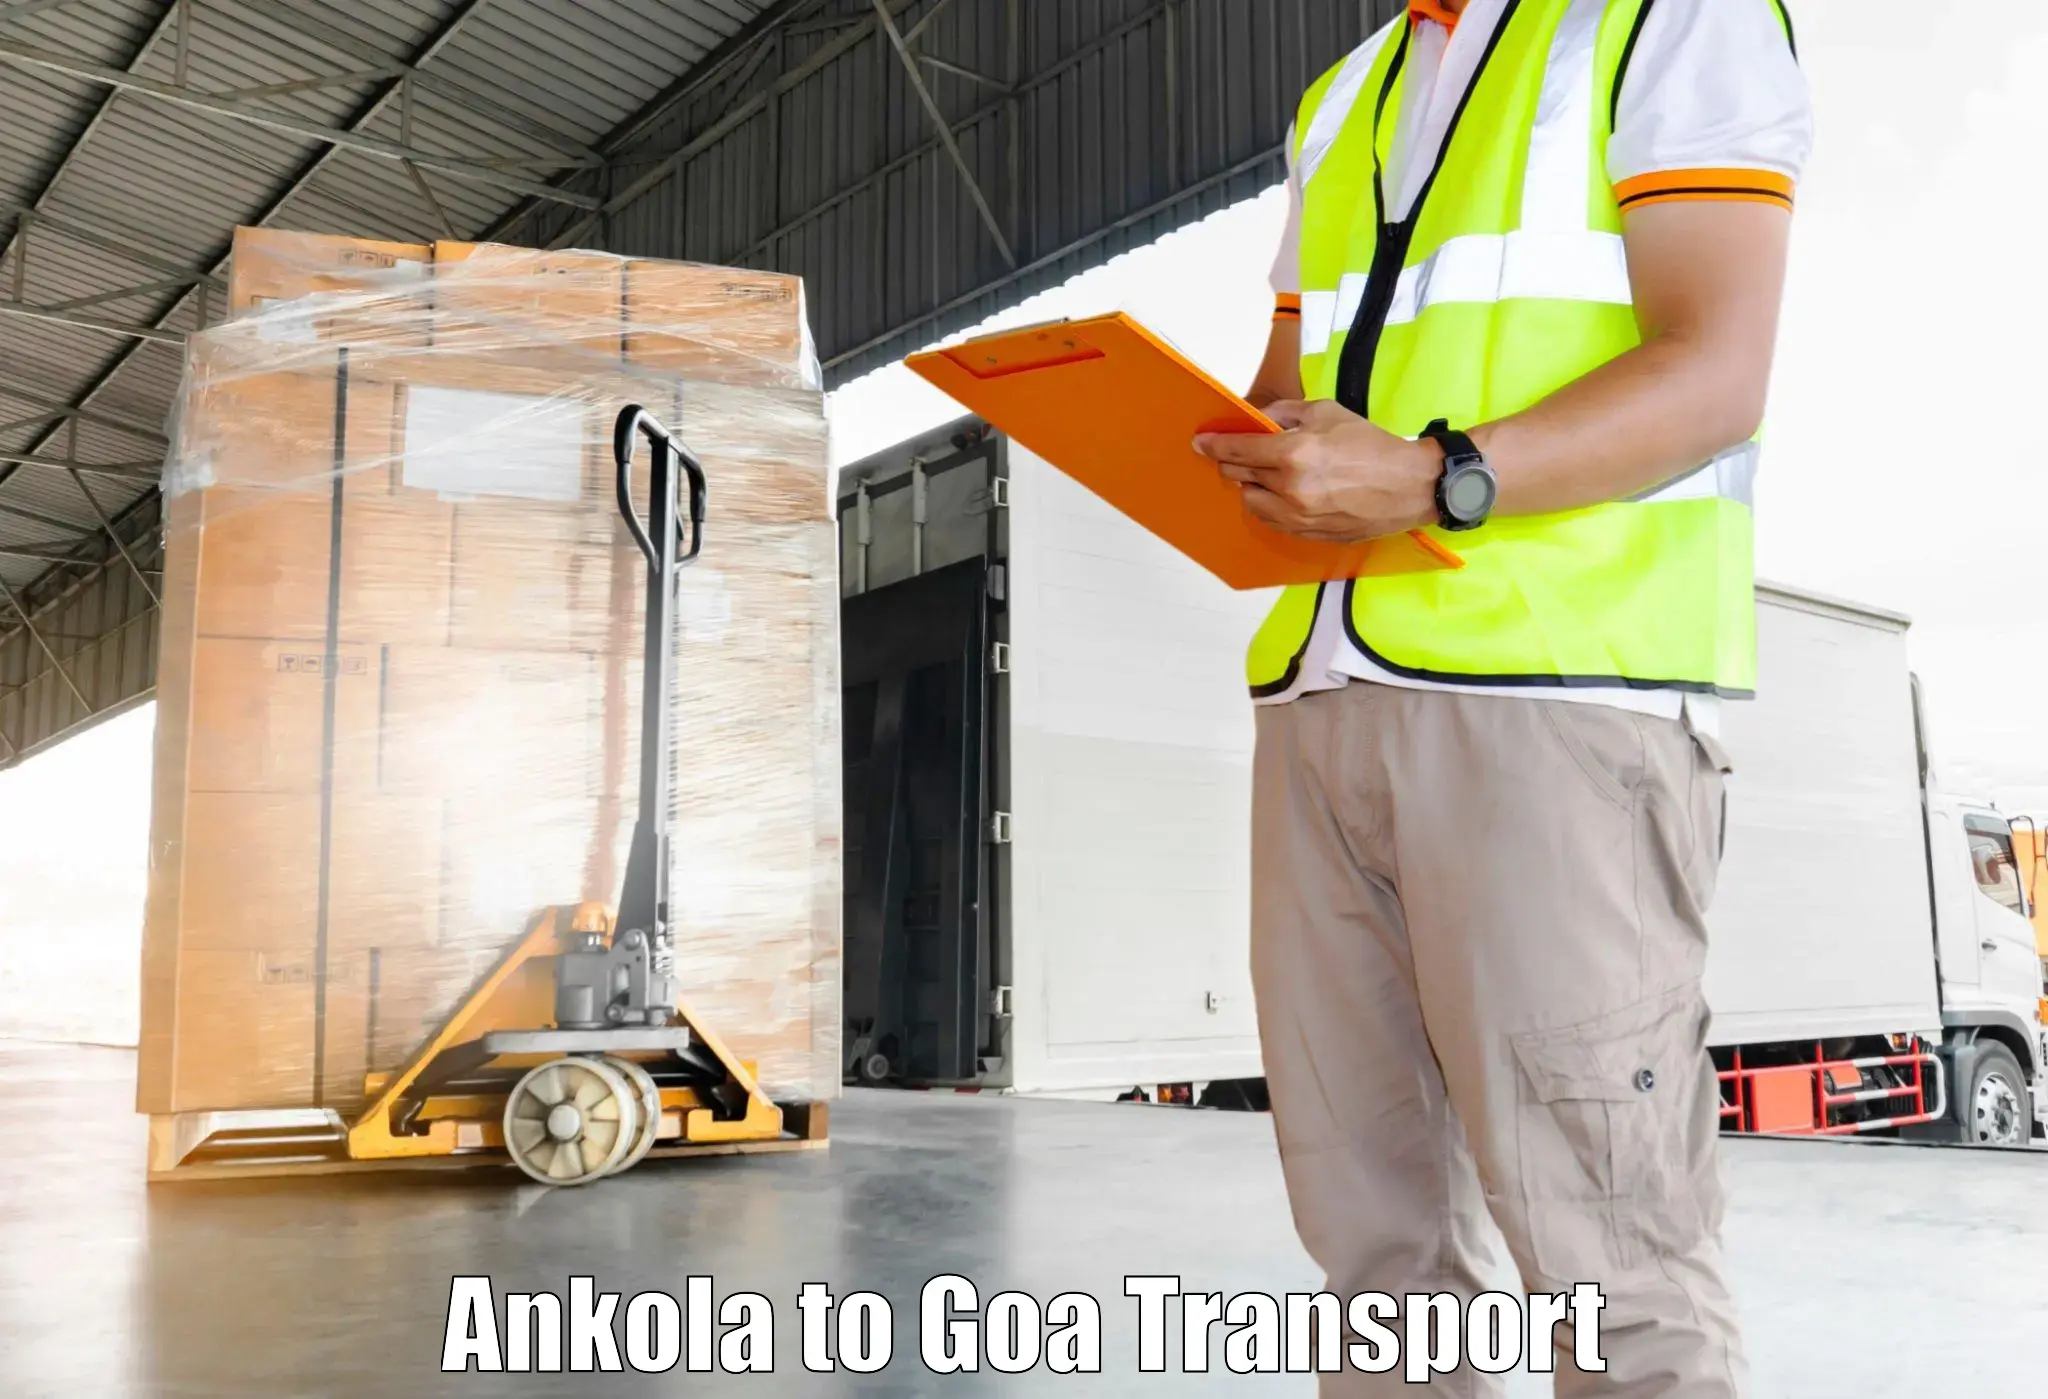 All India transport service Ankola to Margao